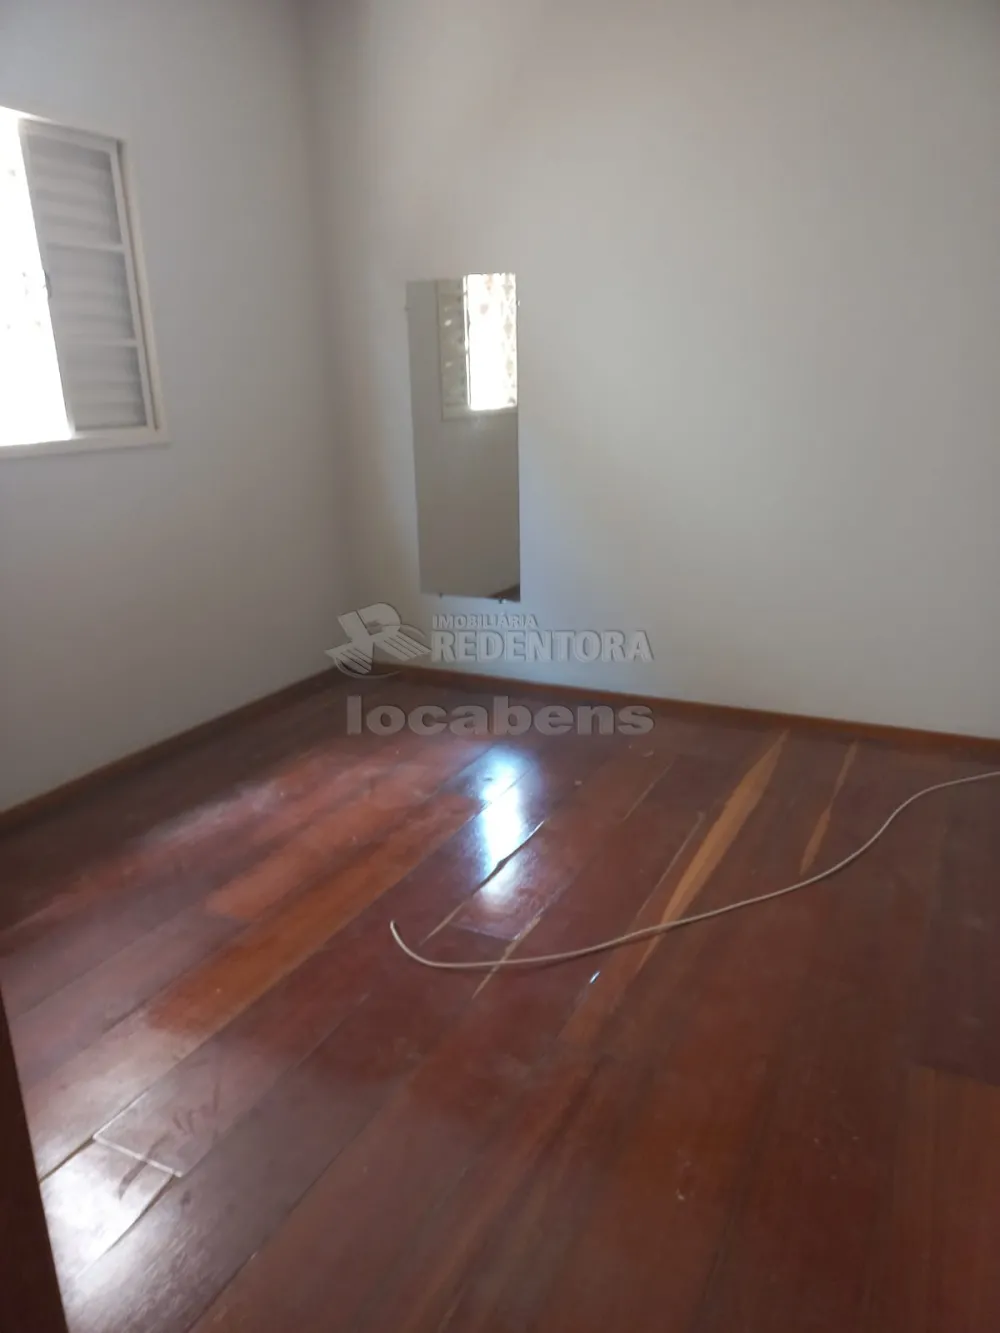 Comprar Casa / Padrão em Cedral R$ 350.000,00 - Foto 6